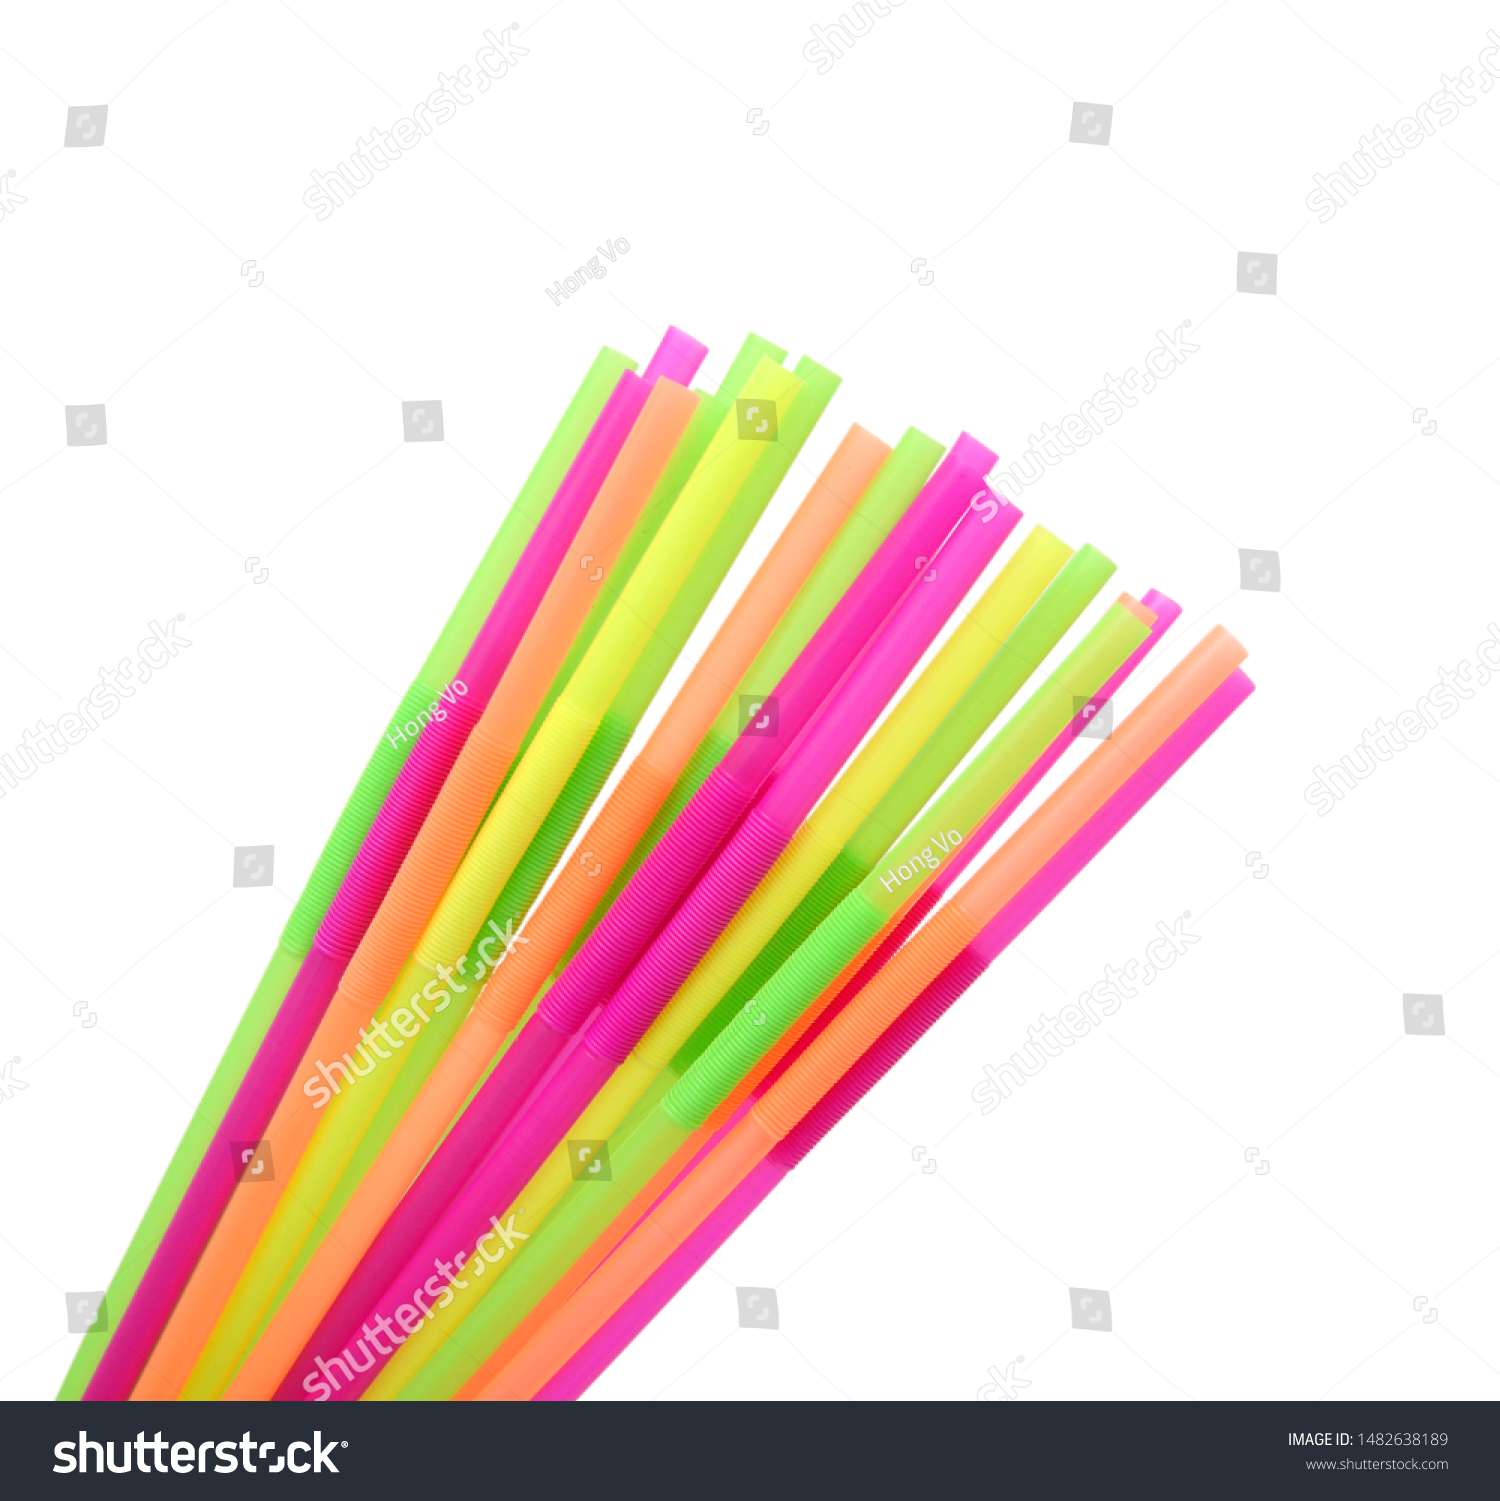 Straw plastic straw drink straw - Image  #1482638189